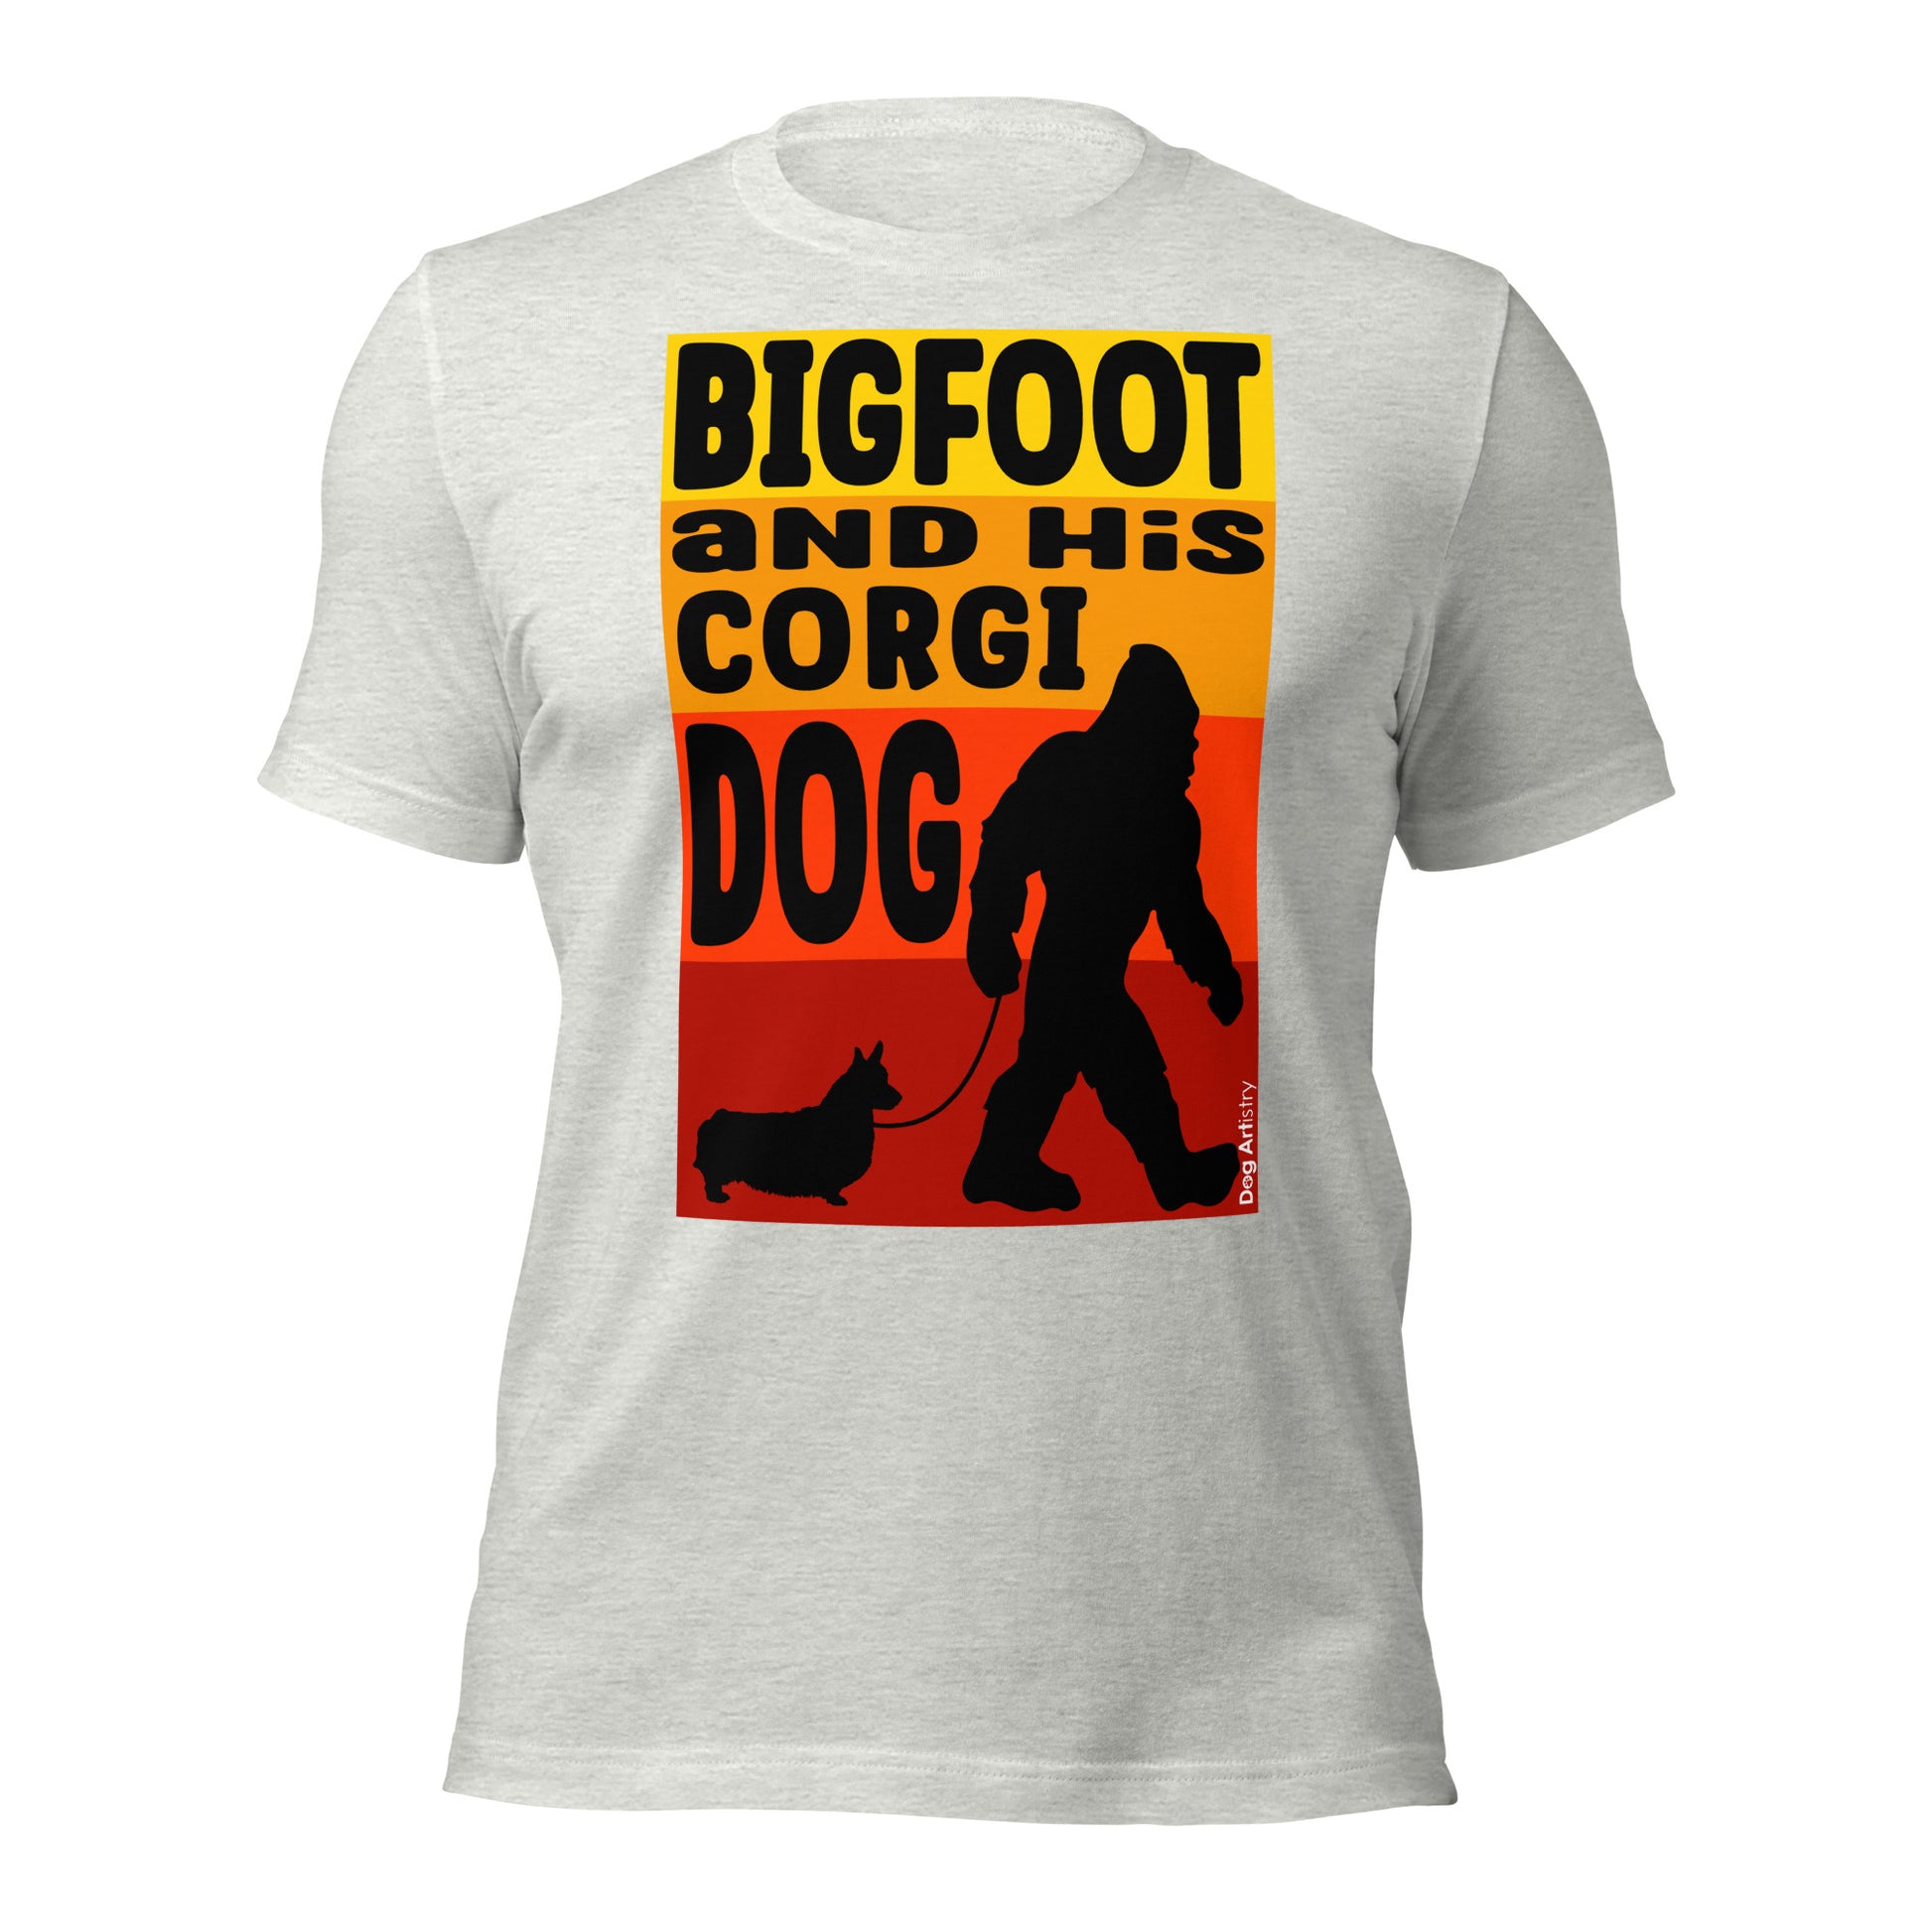 Big foot and his Corgi dog unisex ash t-shirt by Dog Artistry.